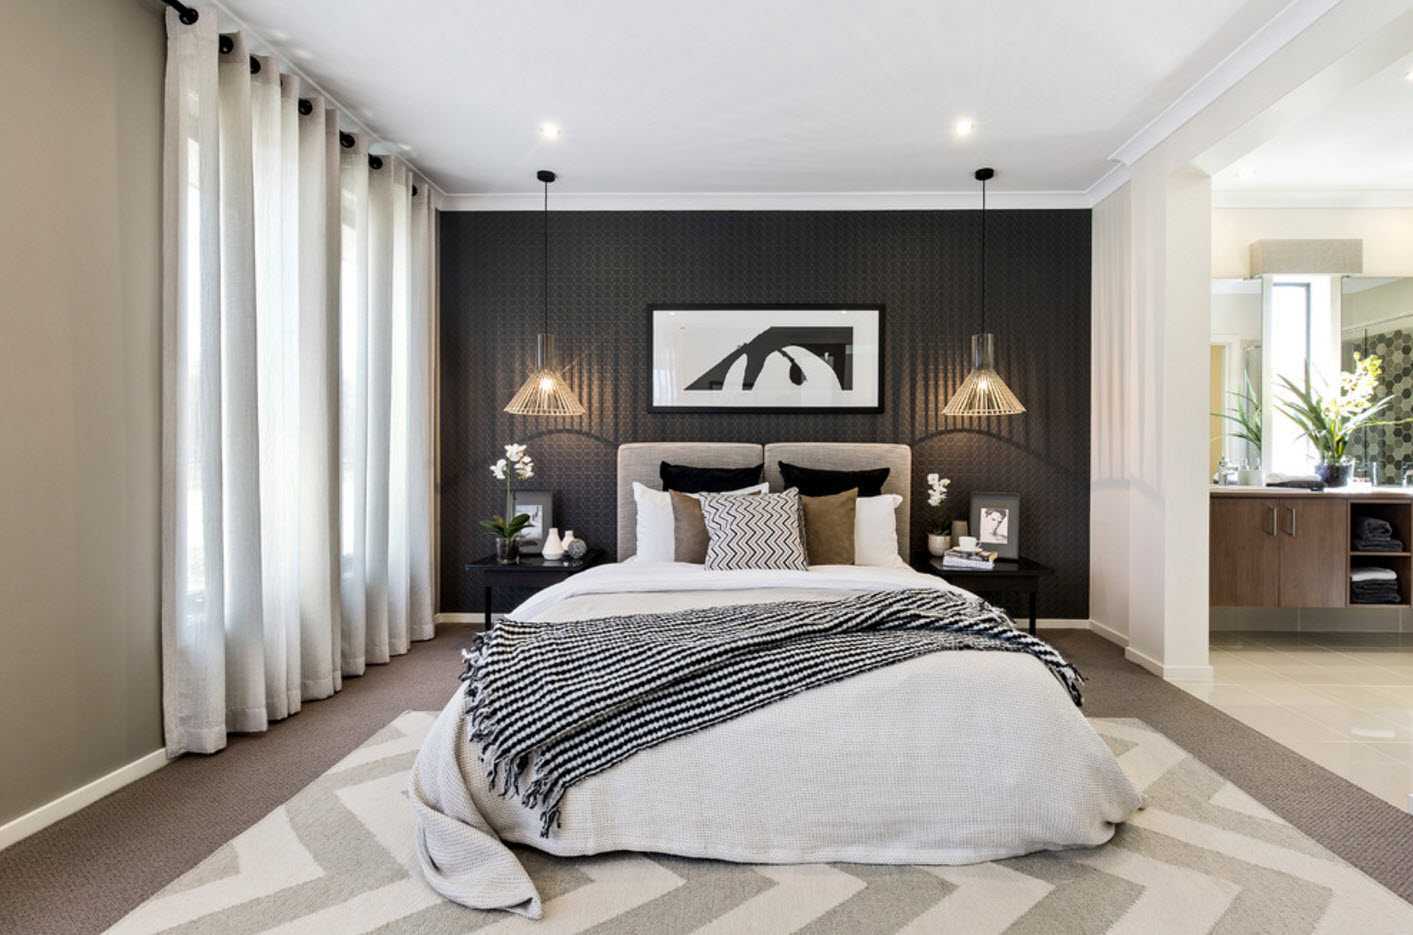 Прикроватные коврики в интерьере спальни: уютно ногам, приятно глазам